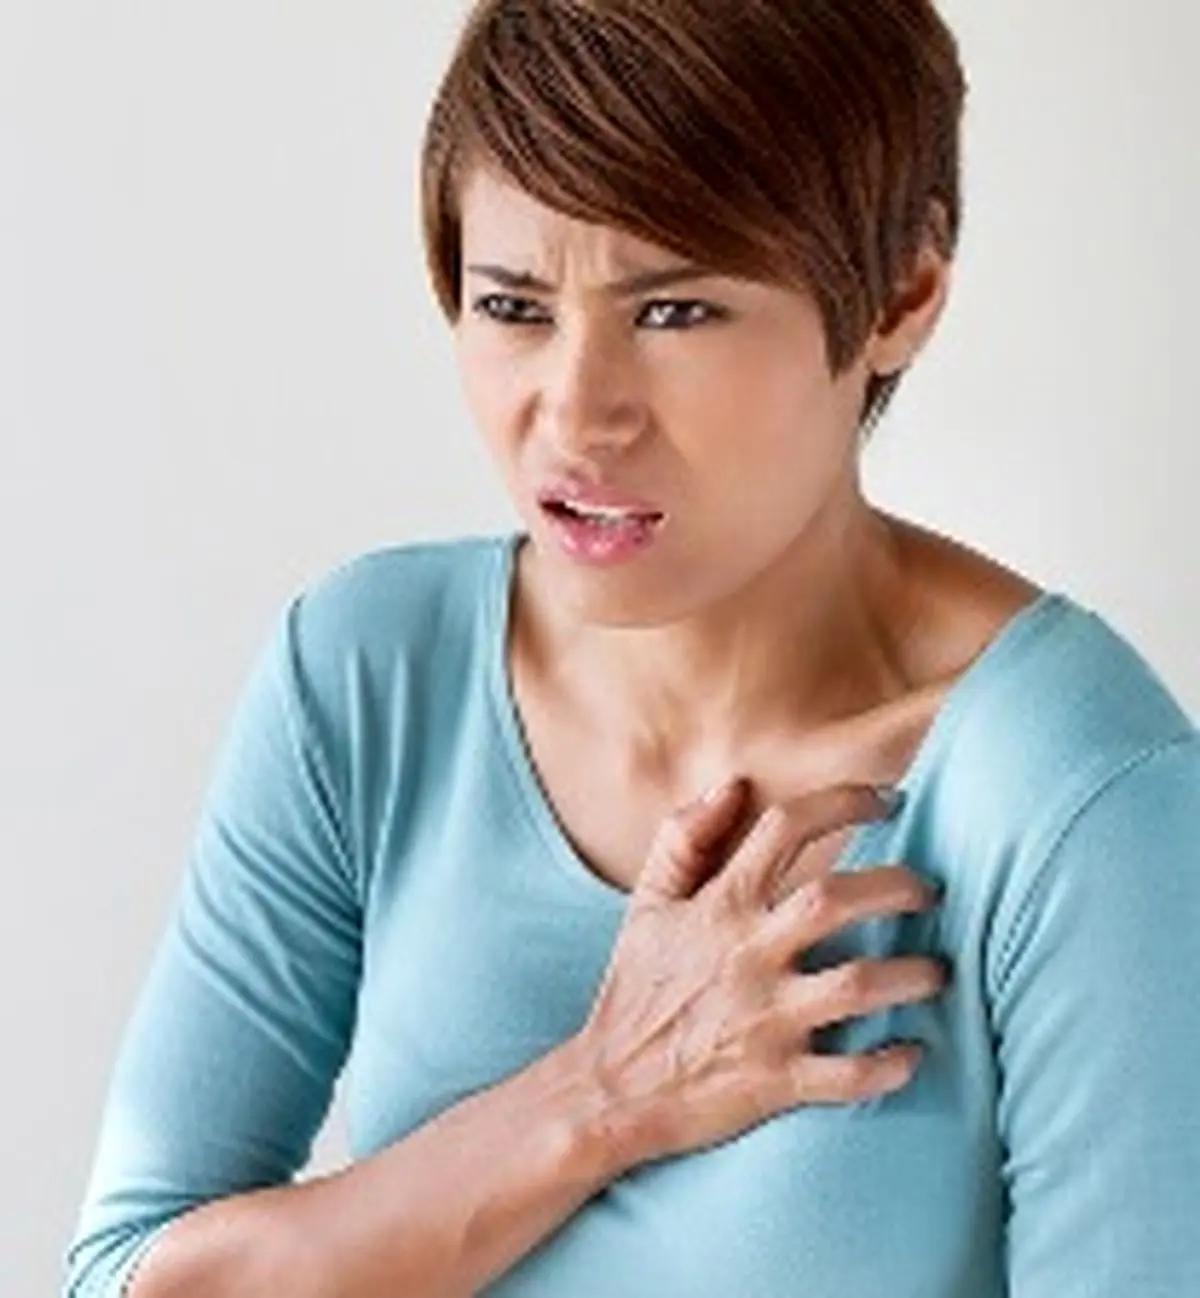  کدام درد قفسه سینه خطرناک است؟